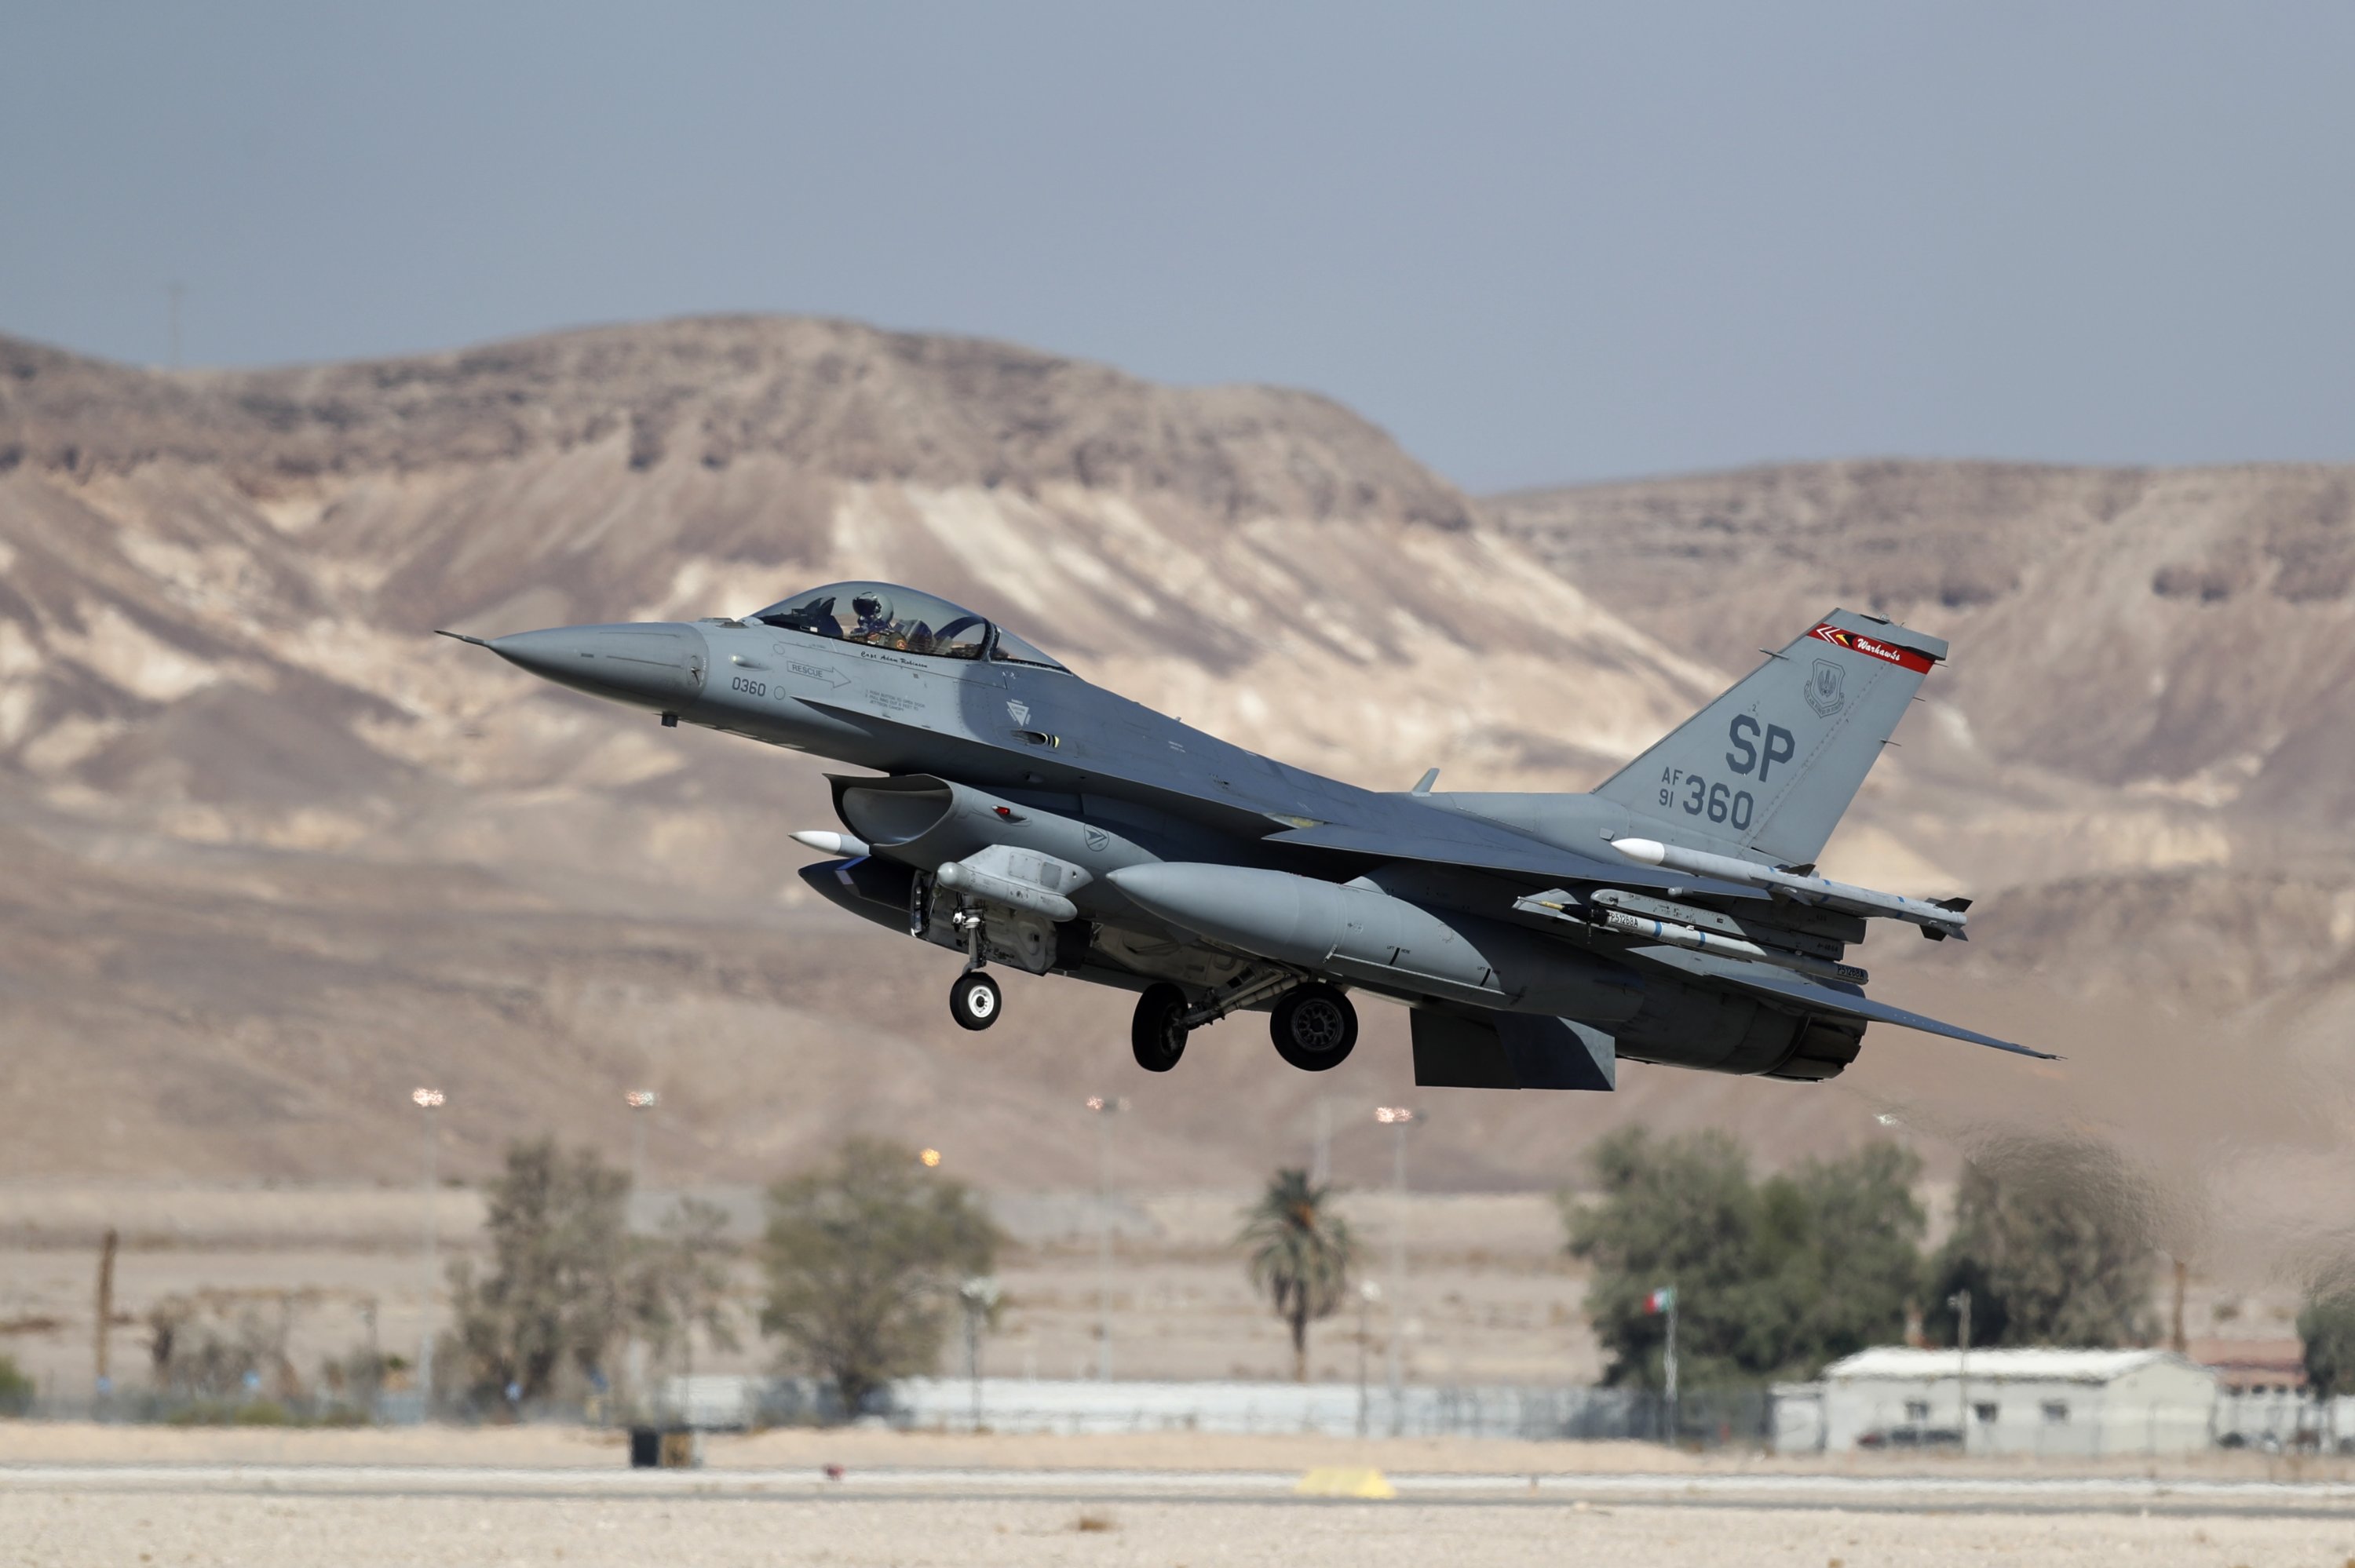 La Turchia potrebbe acquistare i caccia russi Su-35 se gli Stati Uniti bloccano la vendita degli F-16 Fighting Falcon